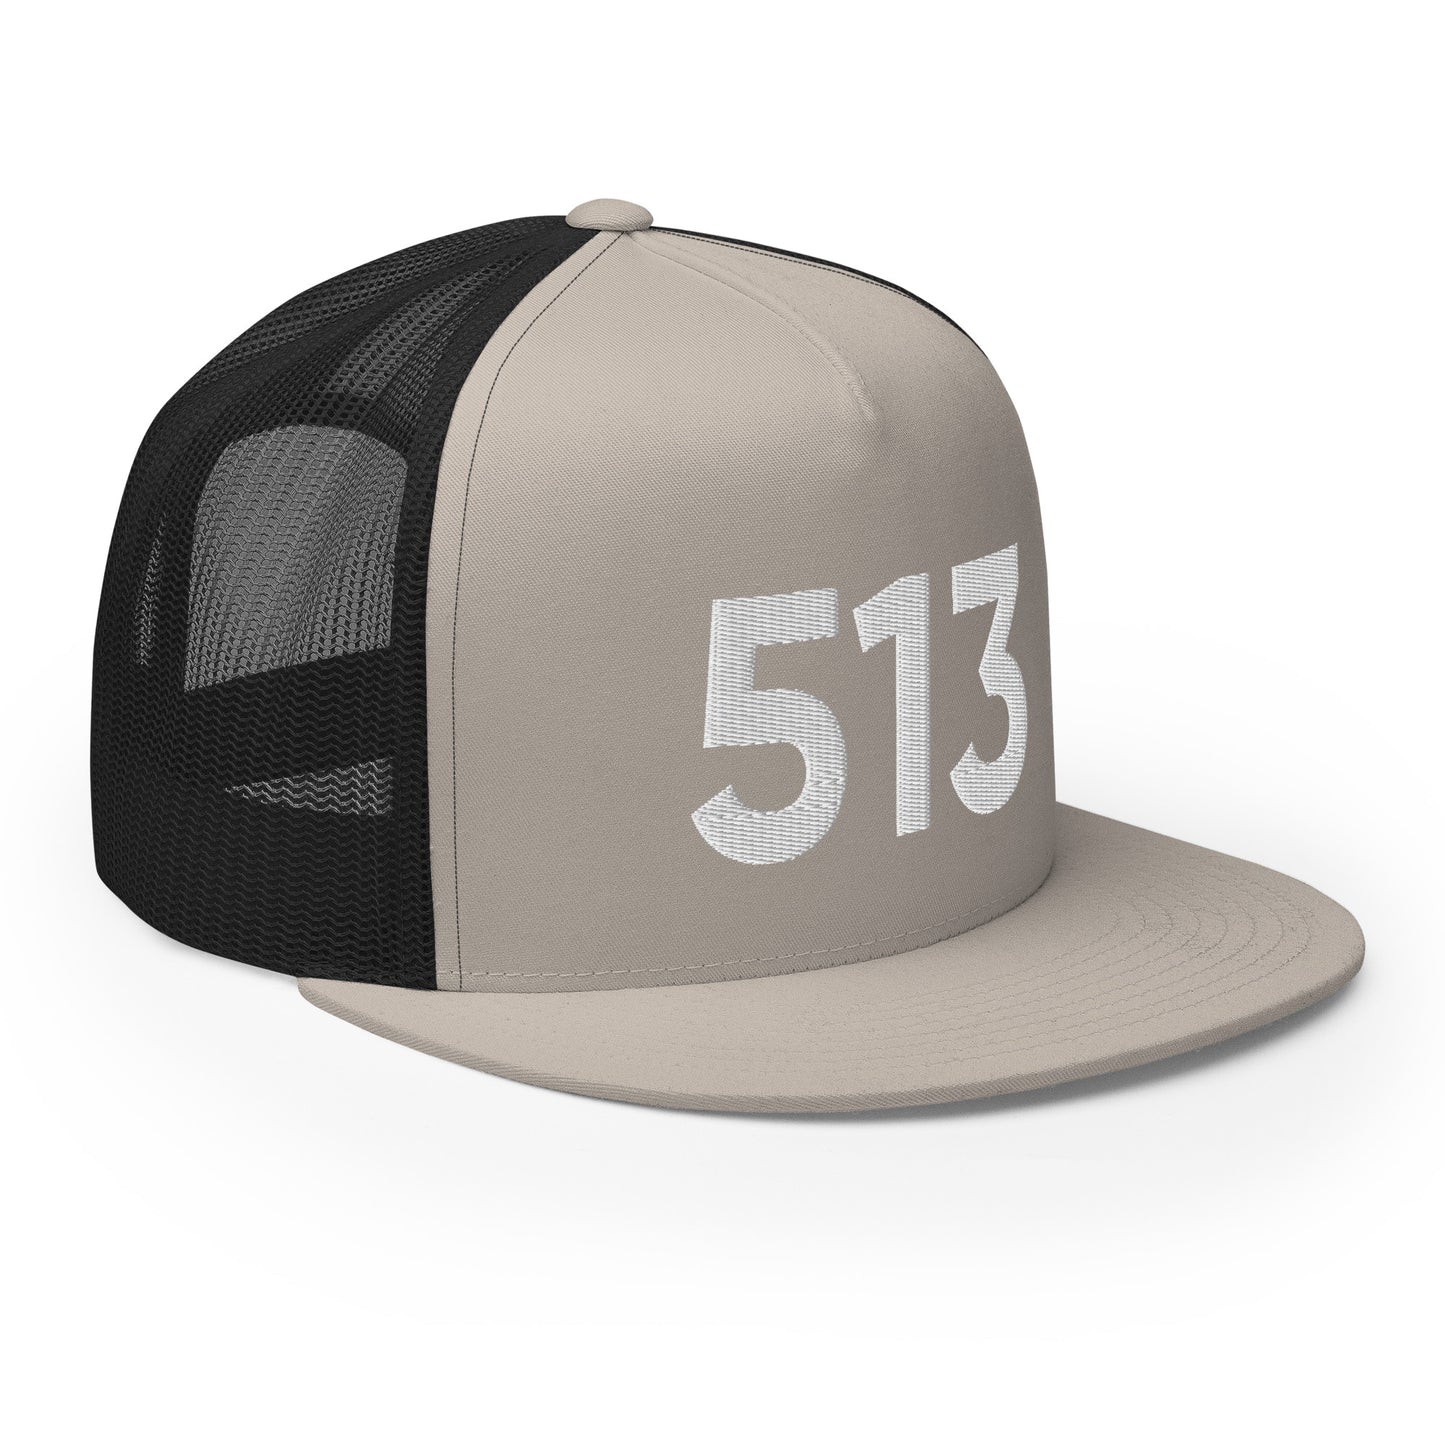 513 Cincinnati Trucker Hat